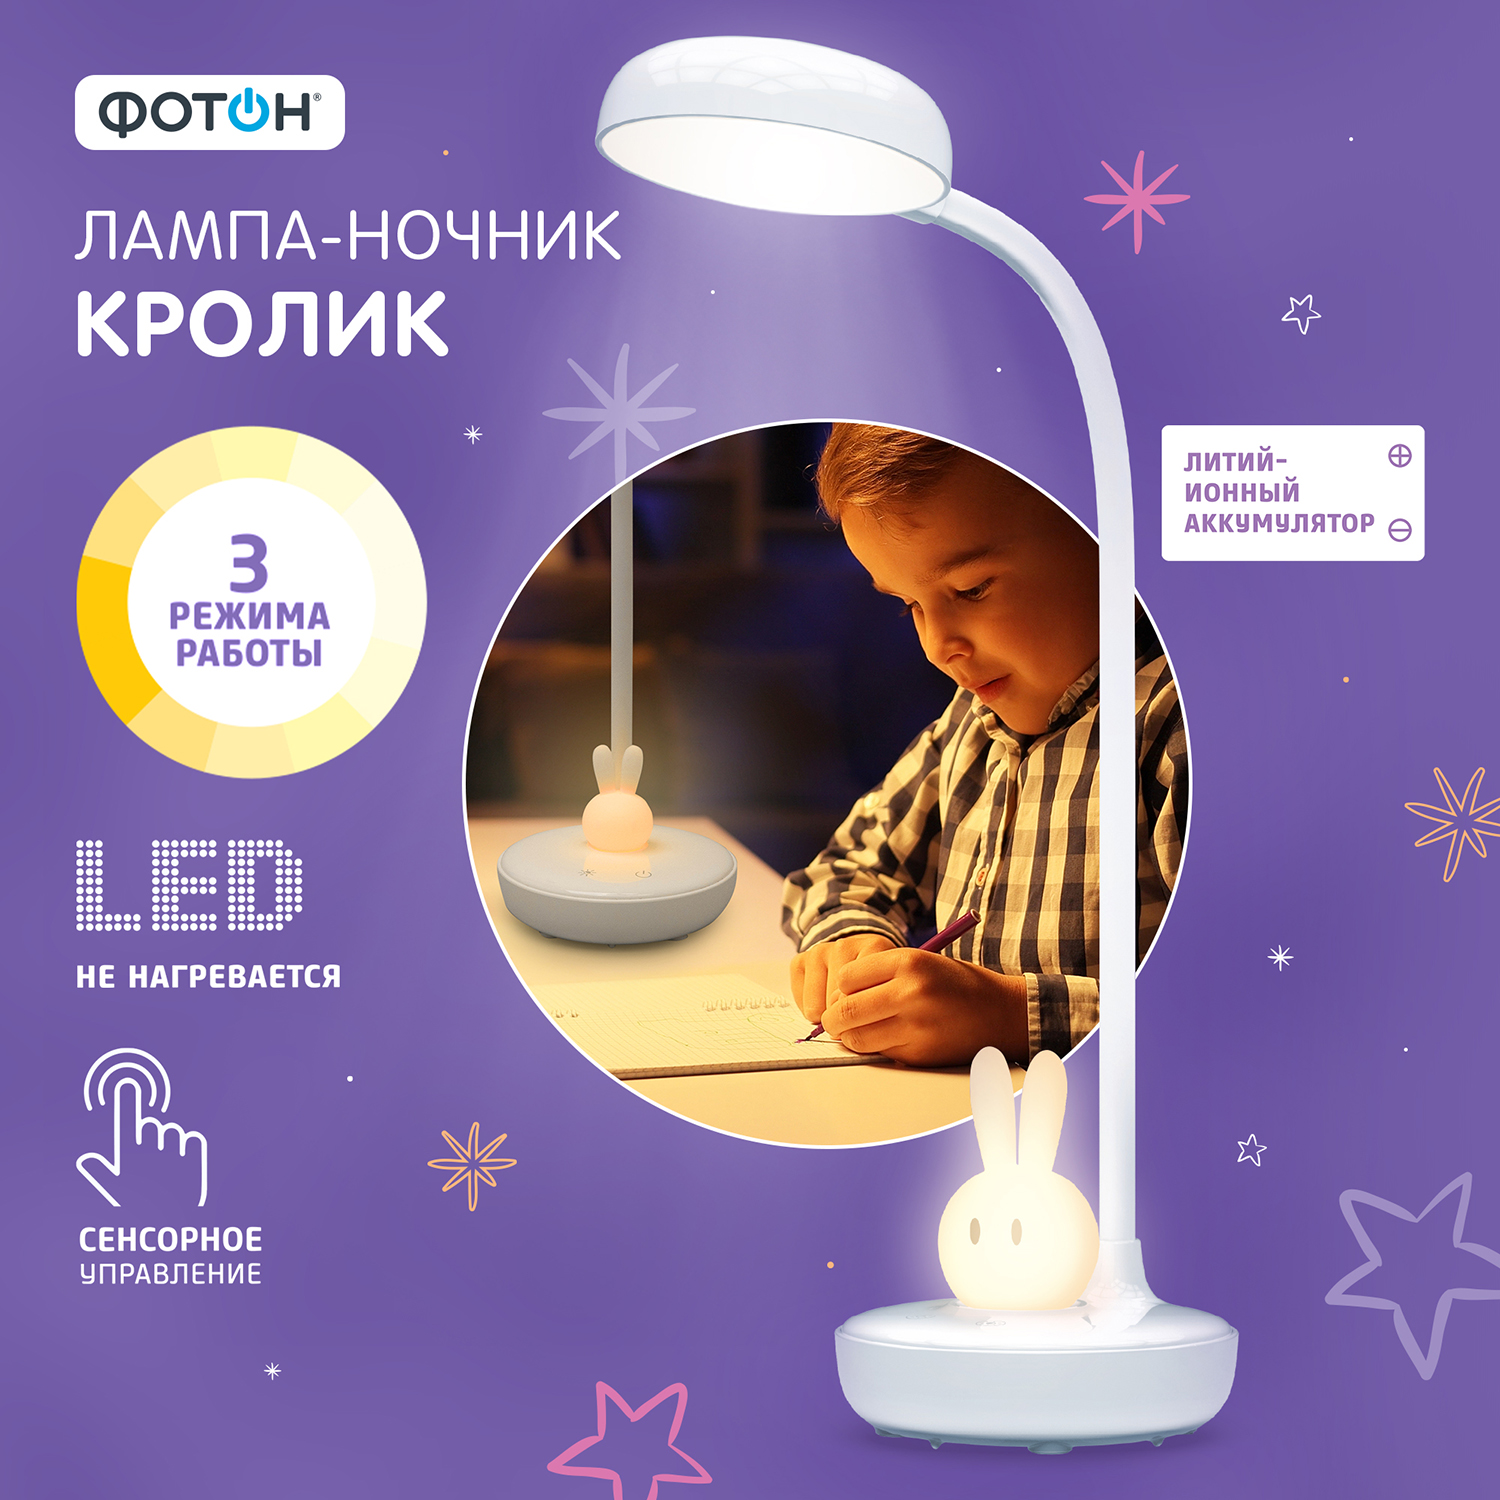 Настольный светильник ФОТОН Кролик ночник аккумуляторный